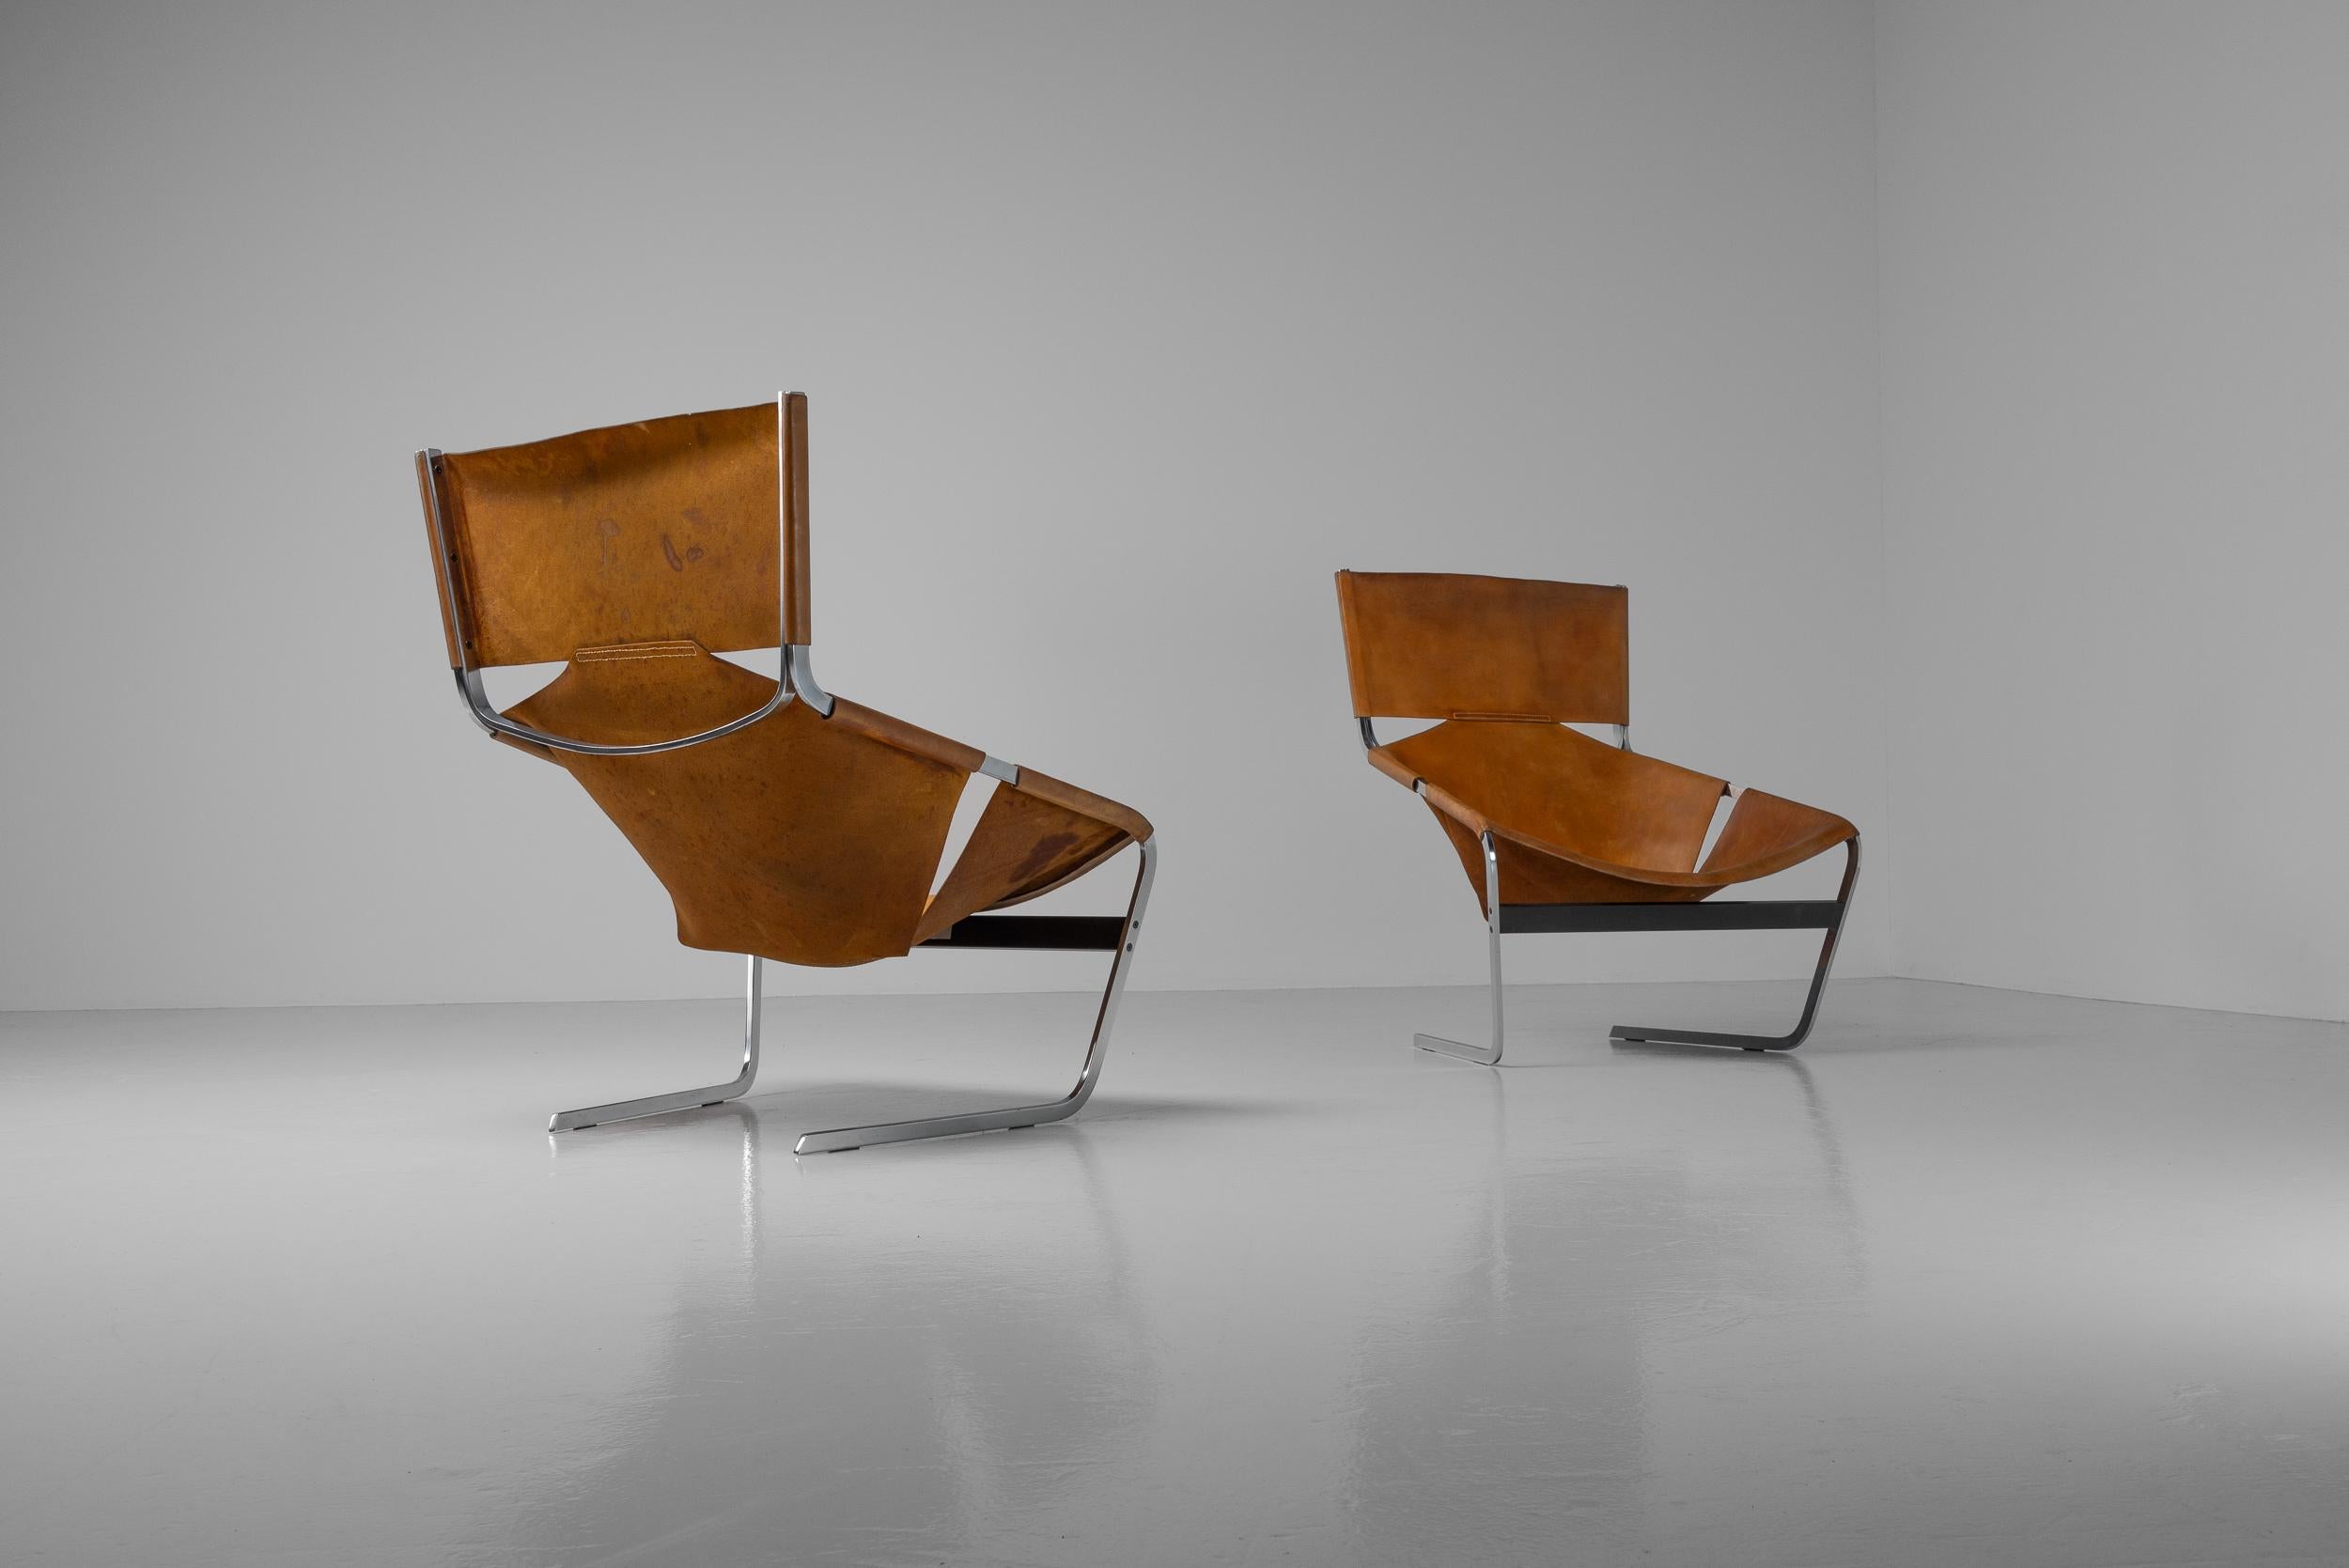 Steel Pierre Paulin F444 lounge chairs pair Artifort 1963